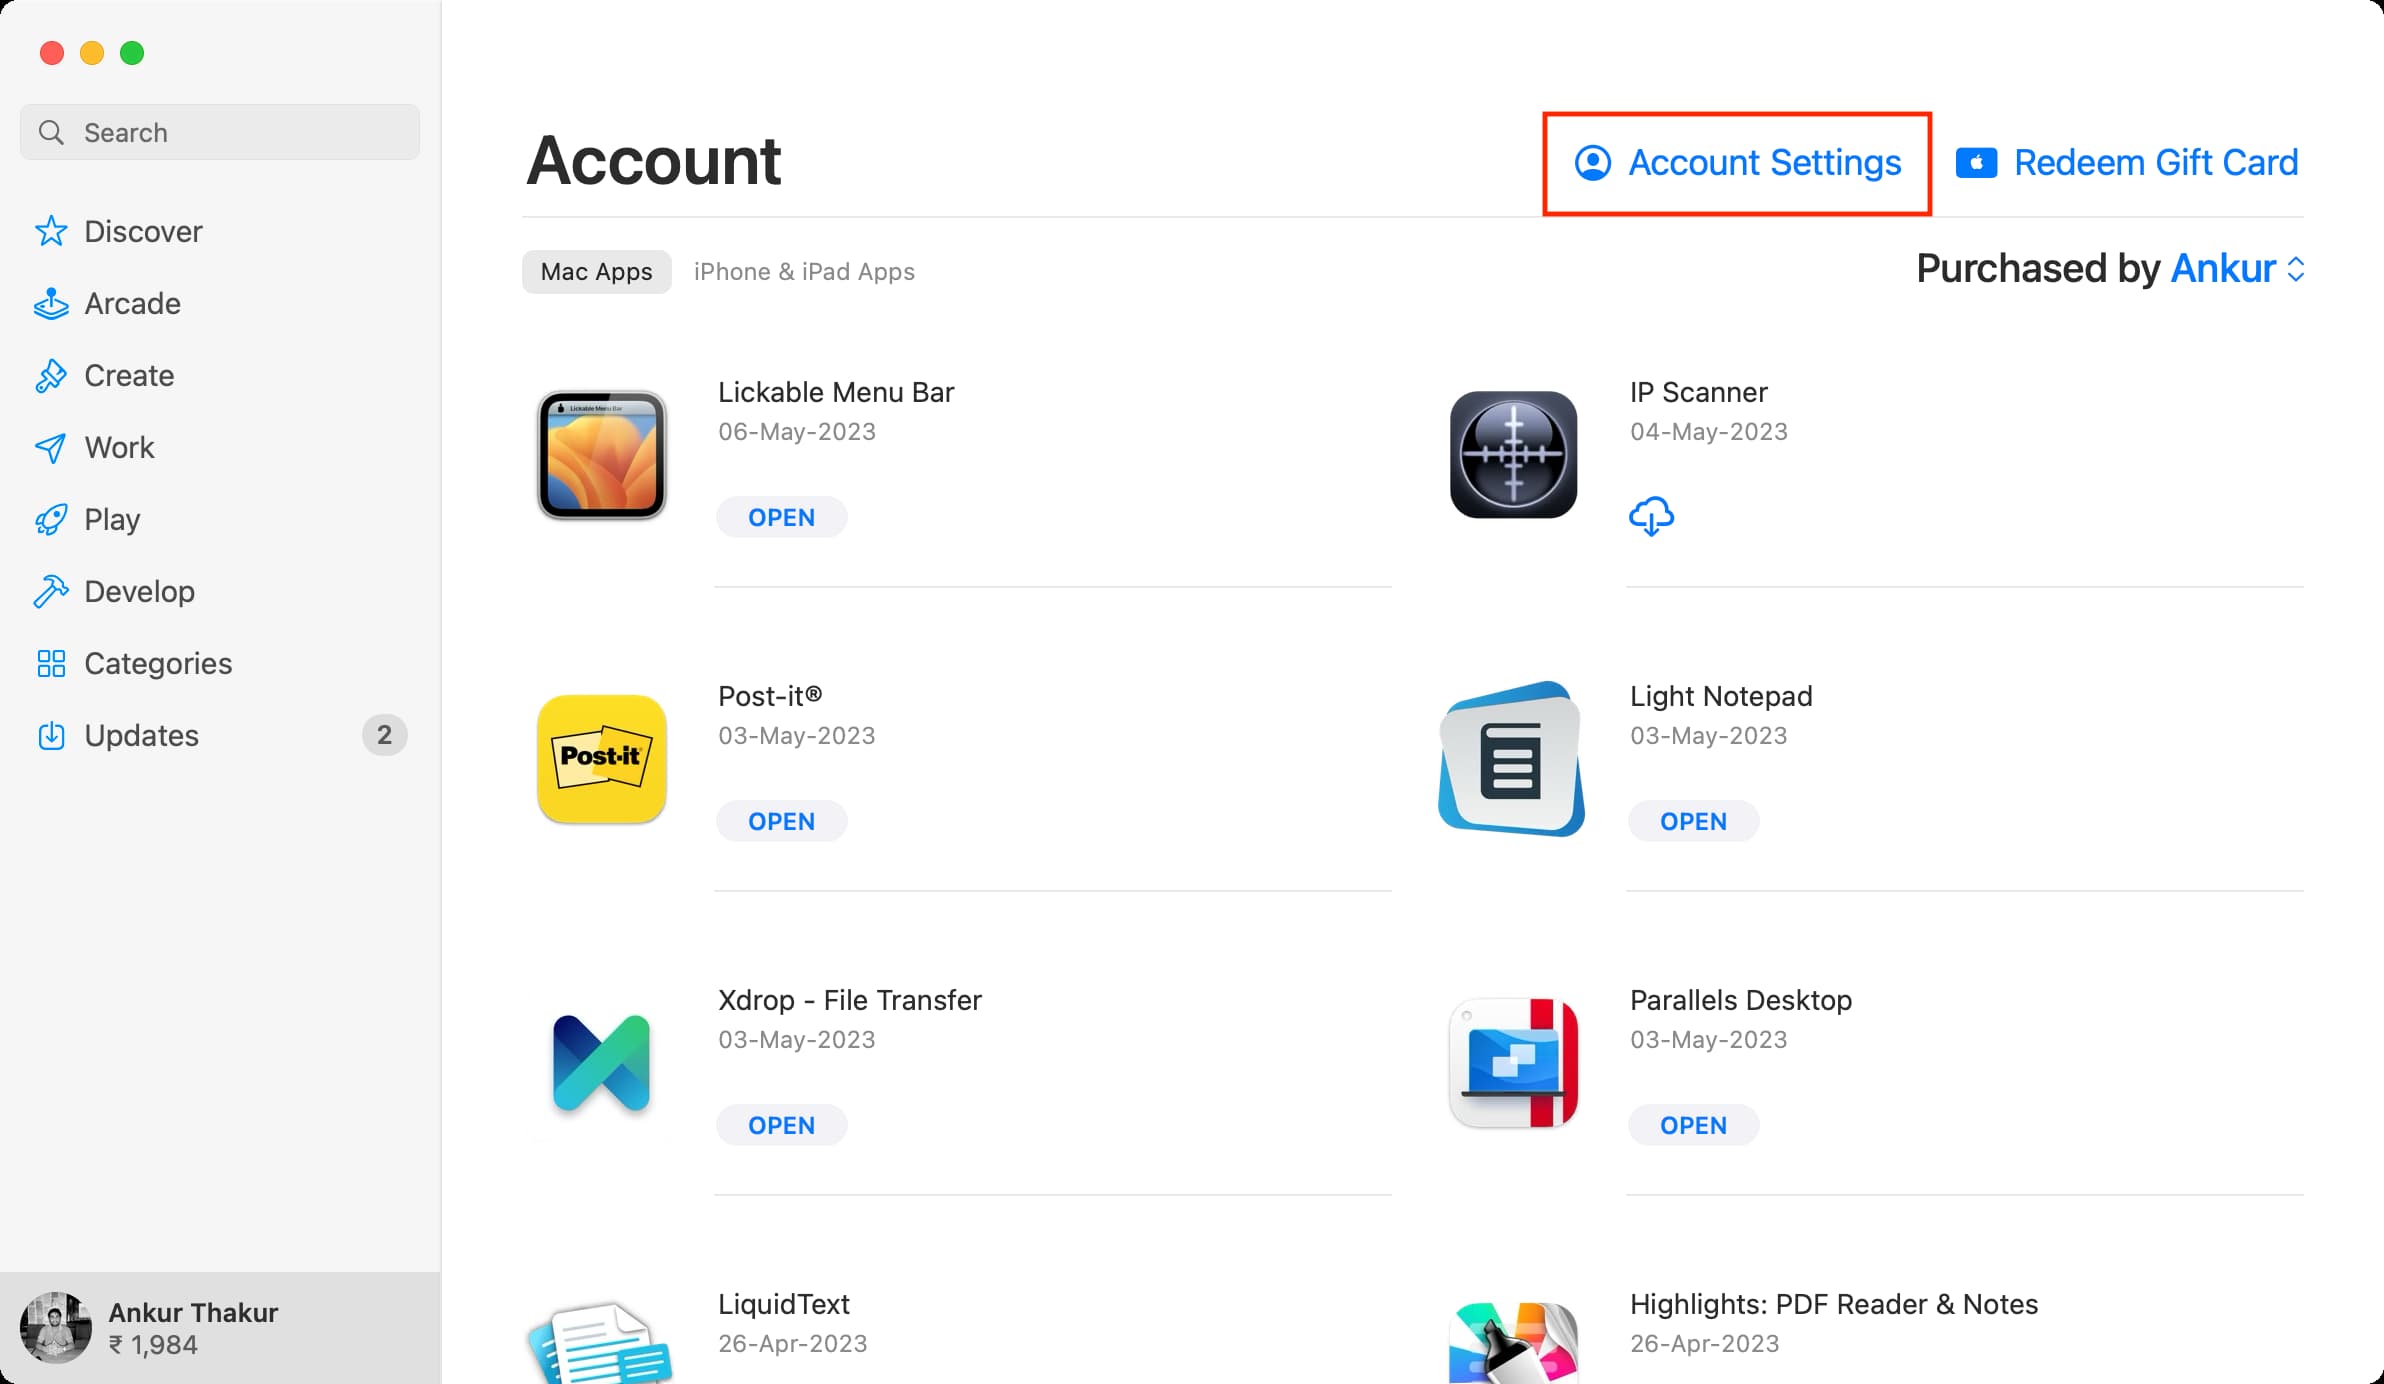 Account Settings in Mac App Store